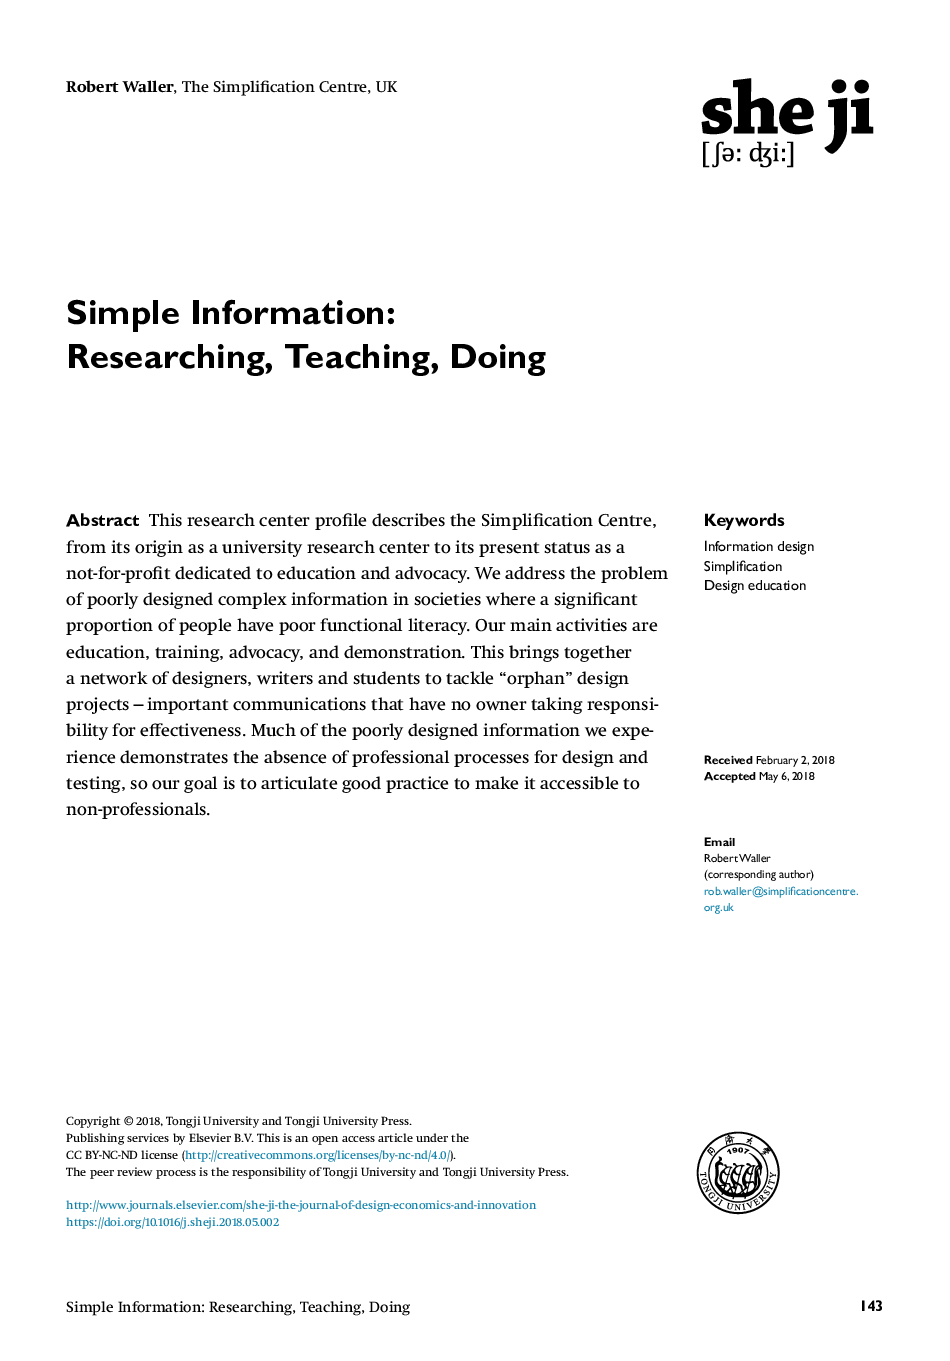 اطلاعات ساده: تحقیق، آموزش، انجام 